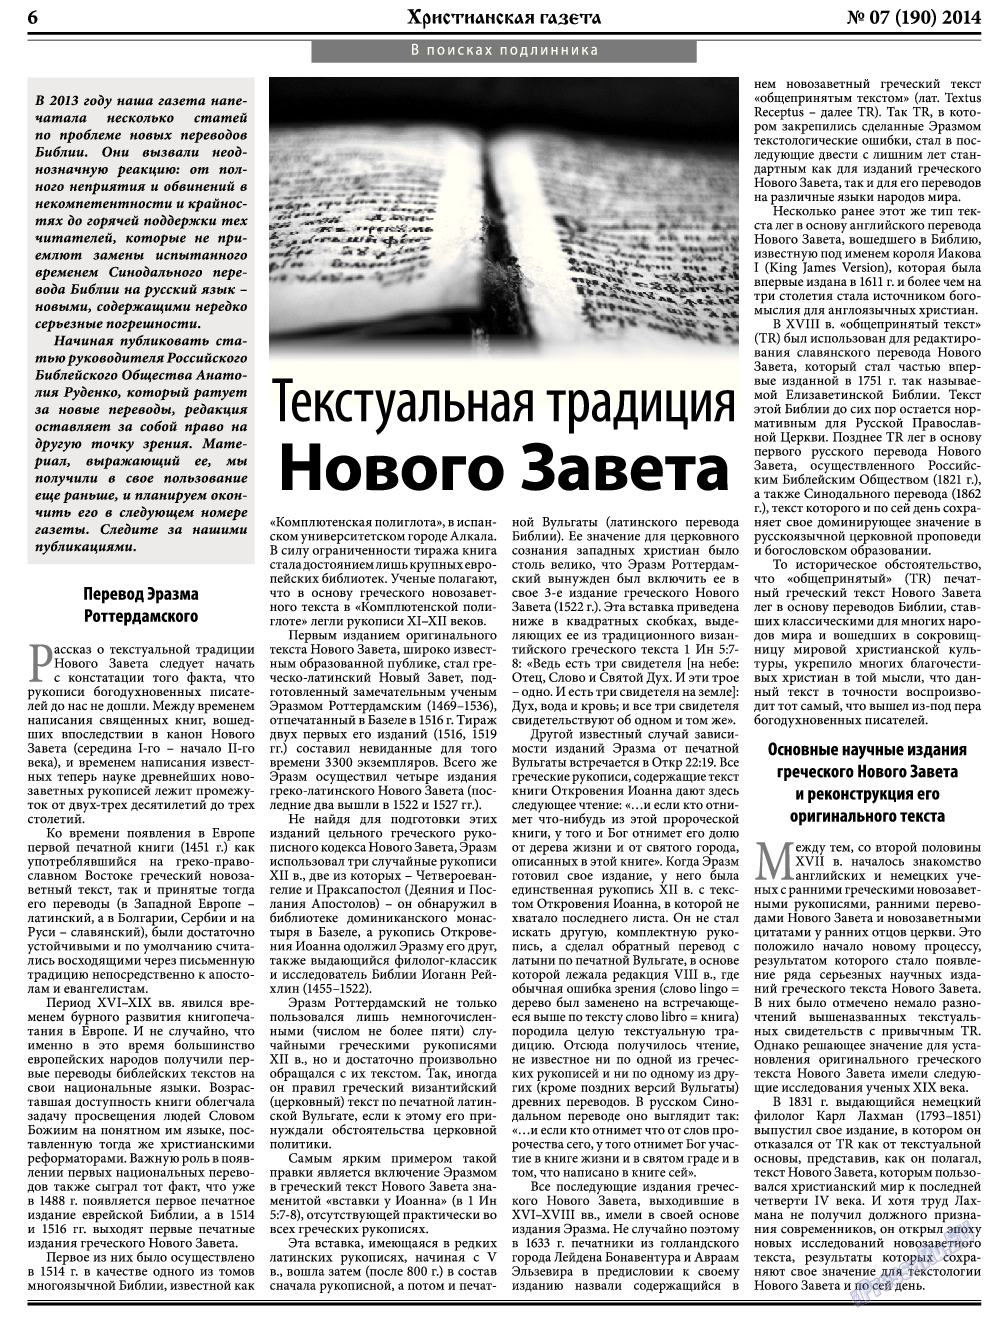 Христианская газета, газета. 2014 №7 стр.6